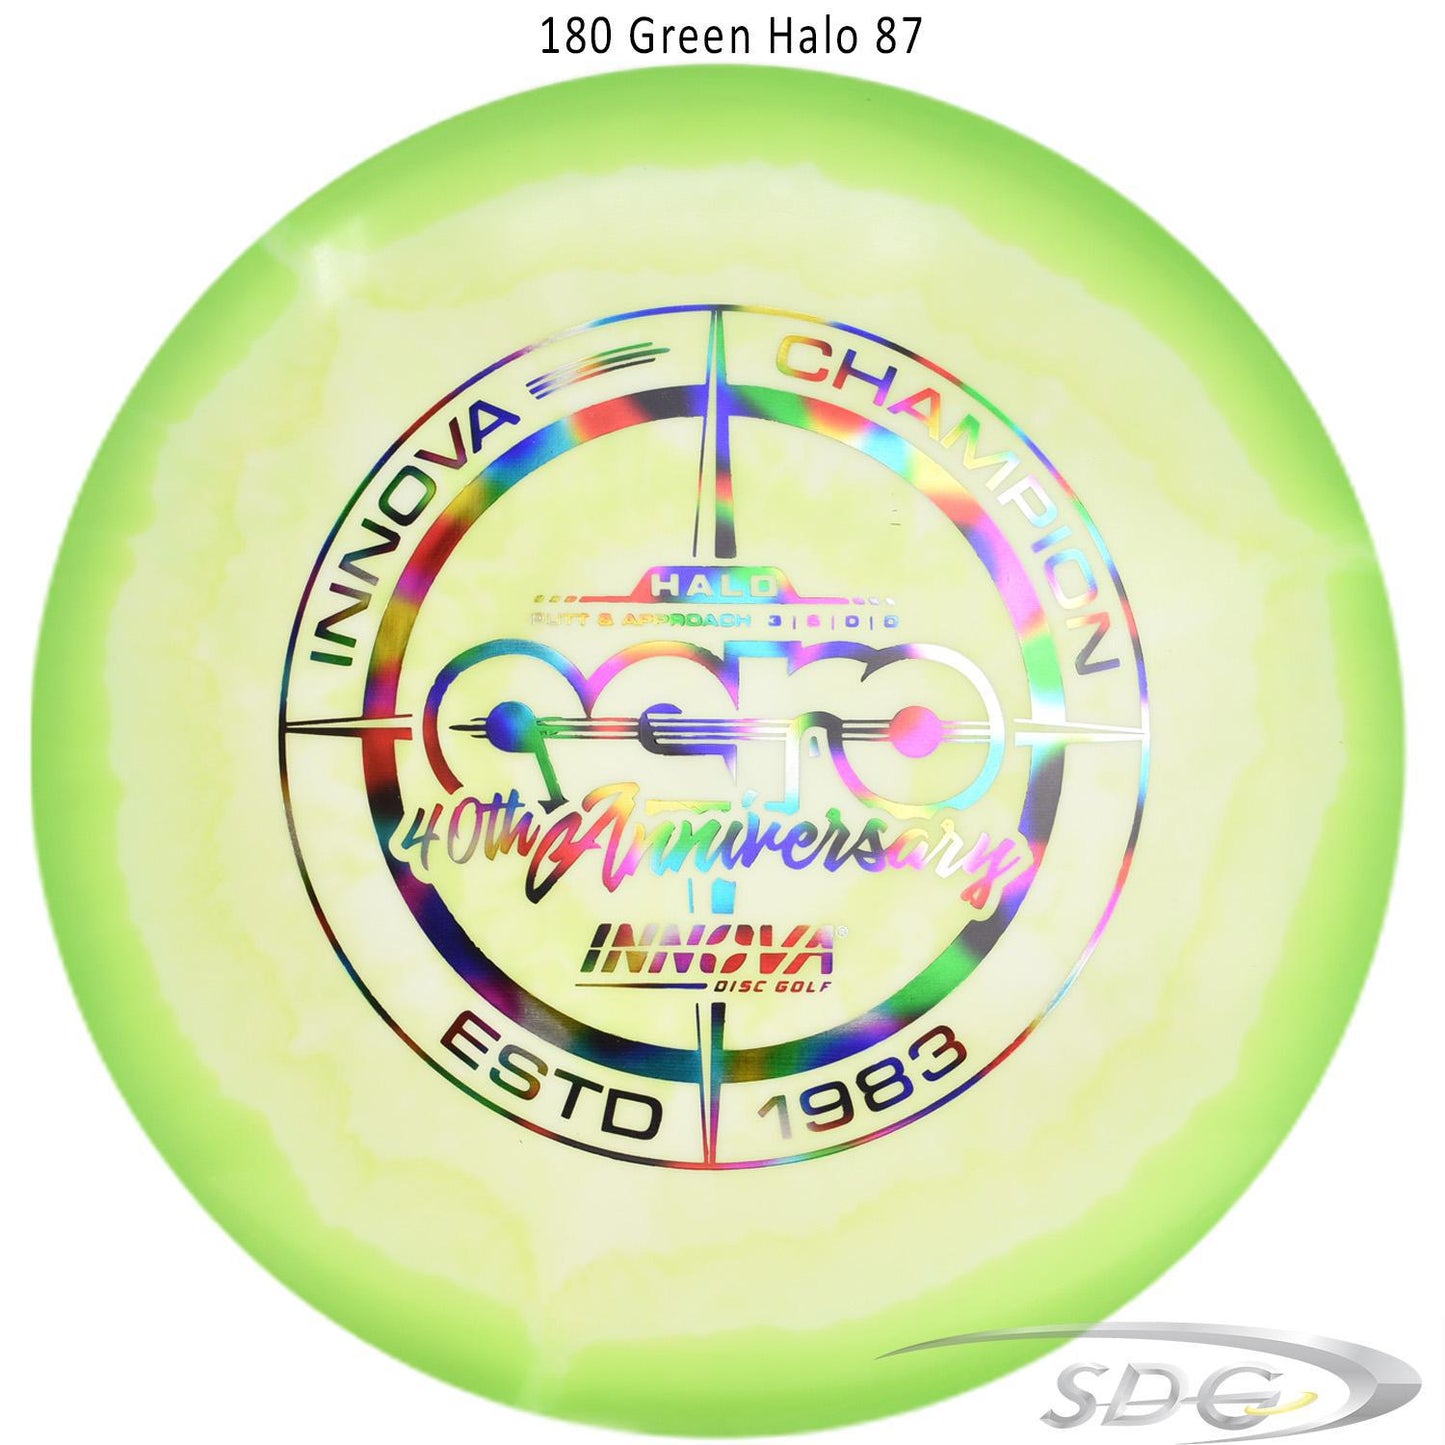 innova-halo-star-aero-40th-anniversary-le-disc-golf-putter 180 Green Halo 87 